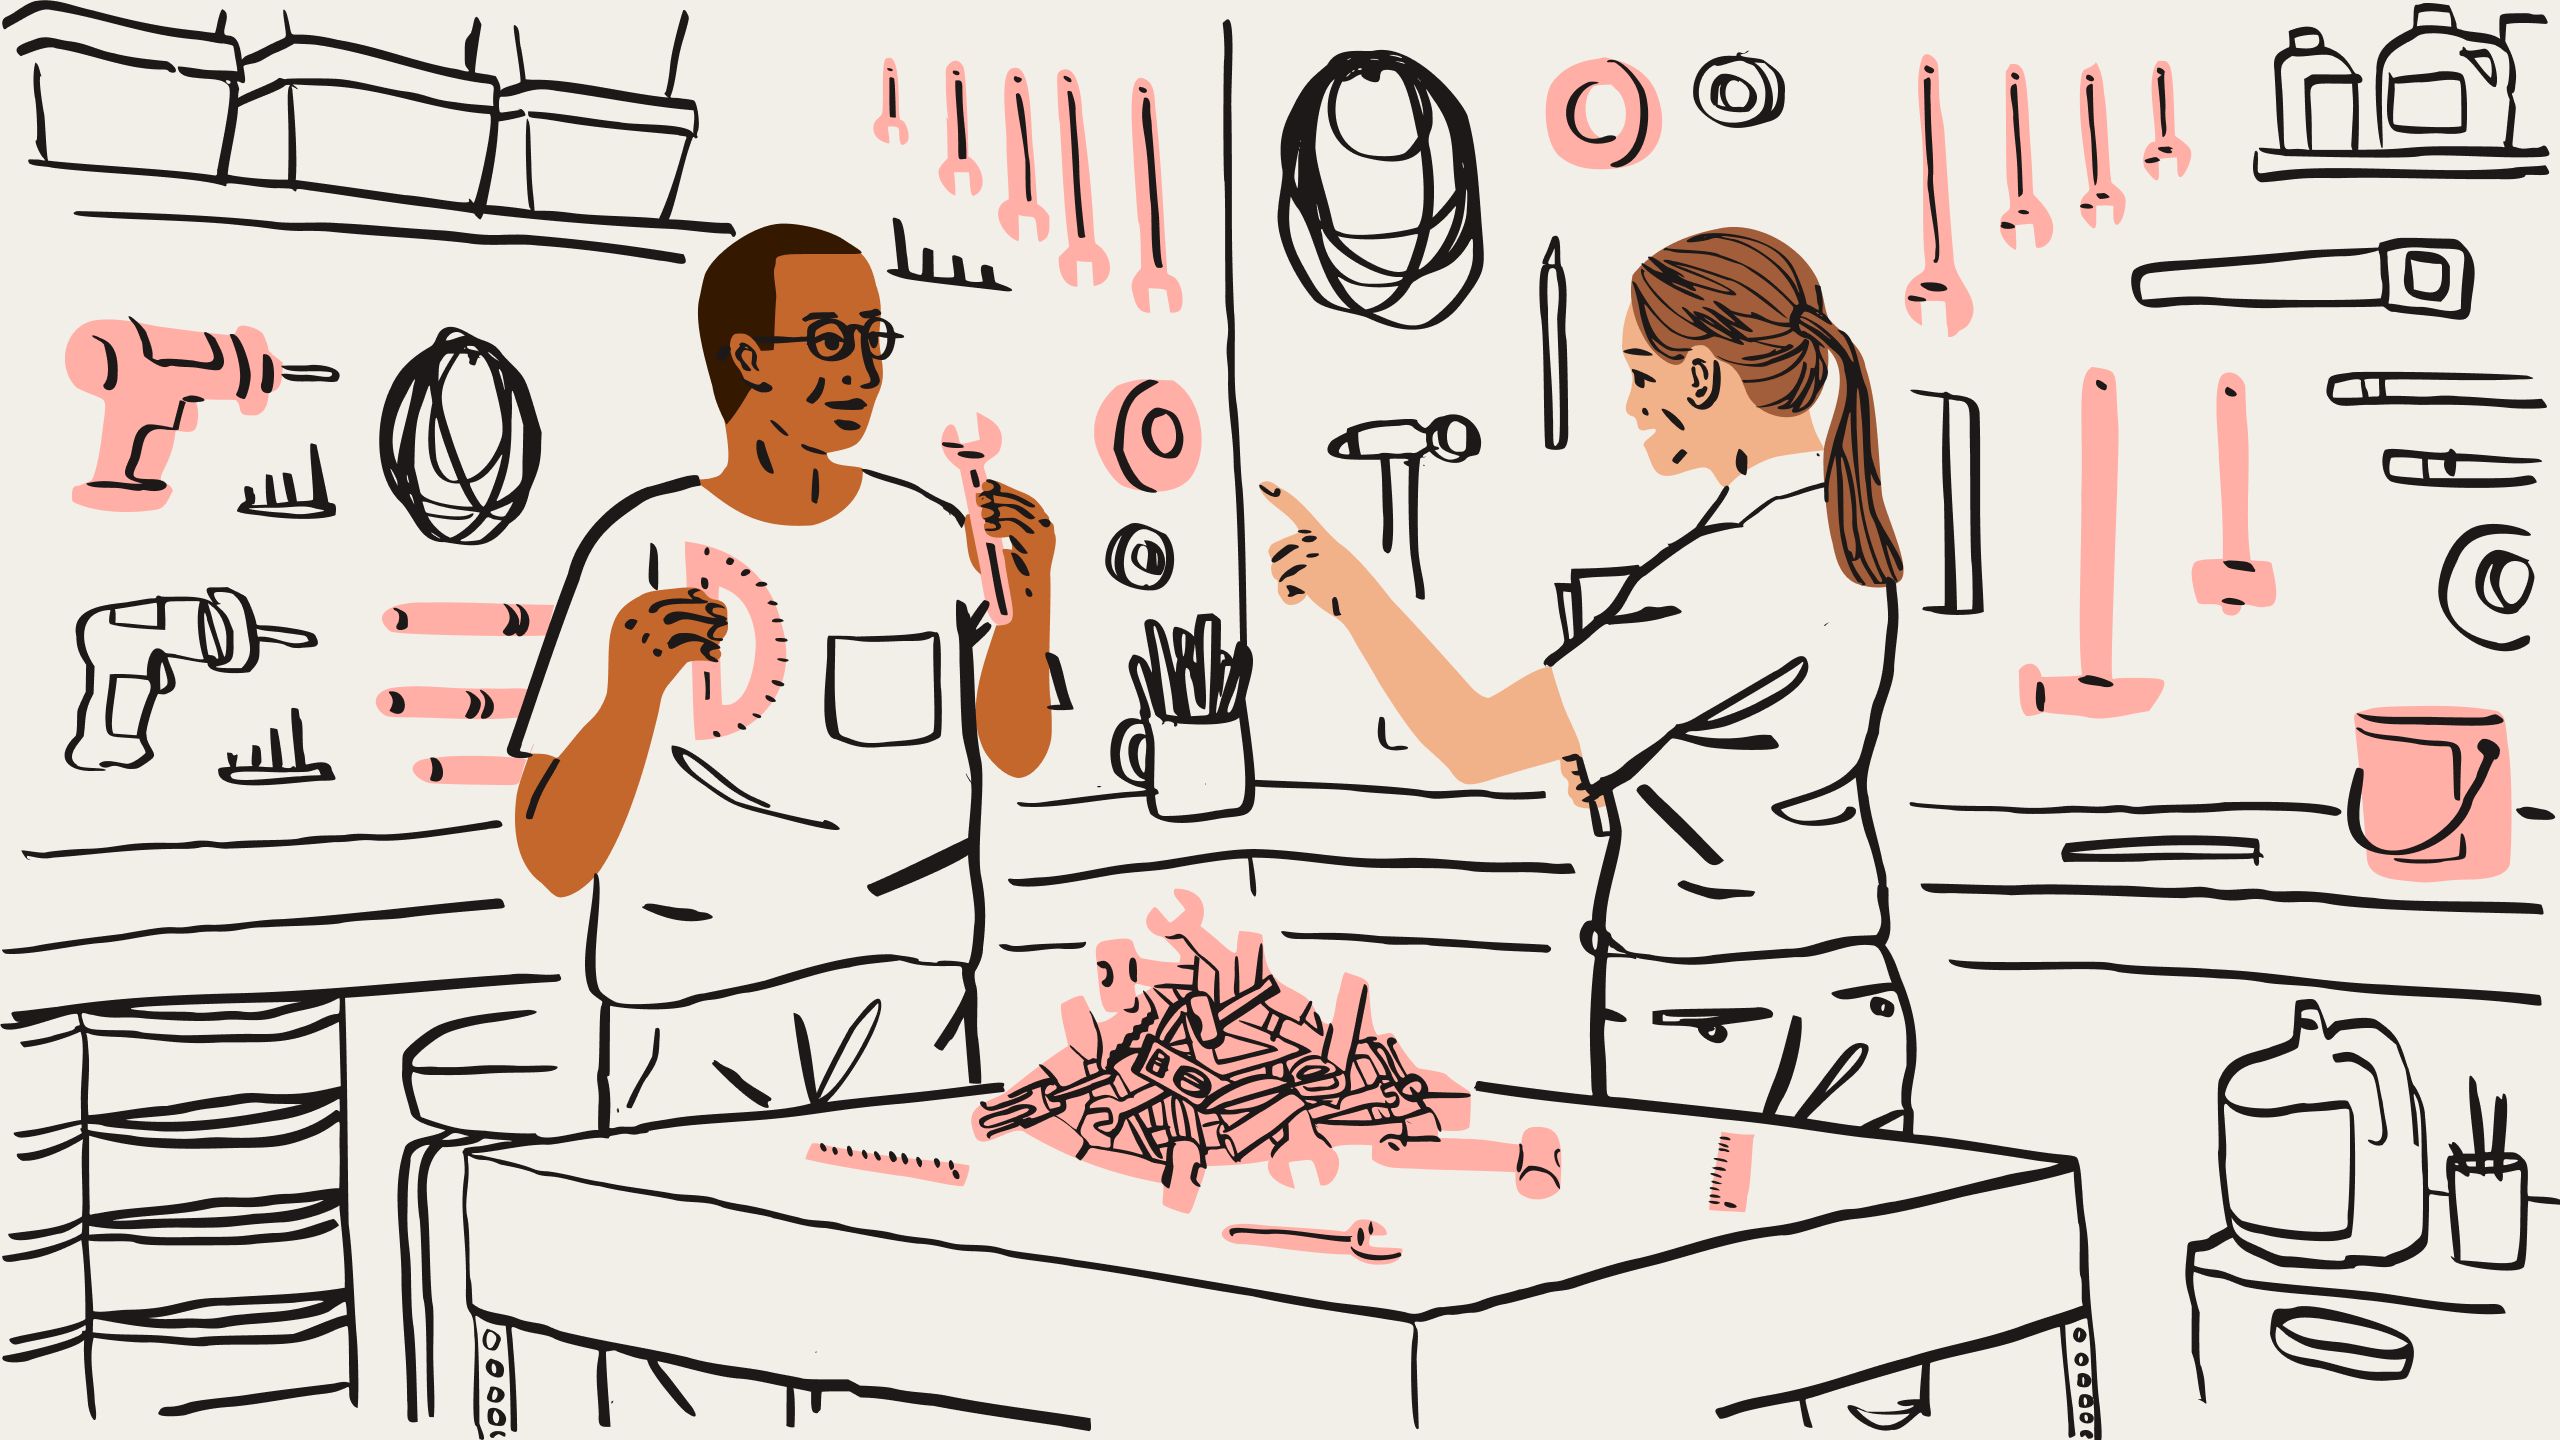 Uma ilustração de duas pessoas classificando uma pilha de ferramentas, incluindo chaves e réguas